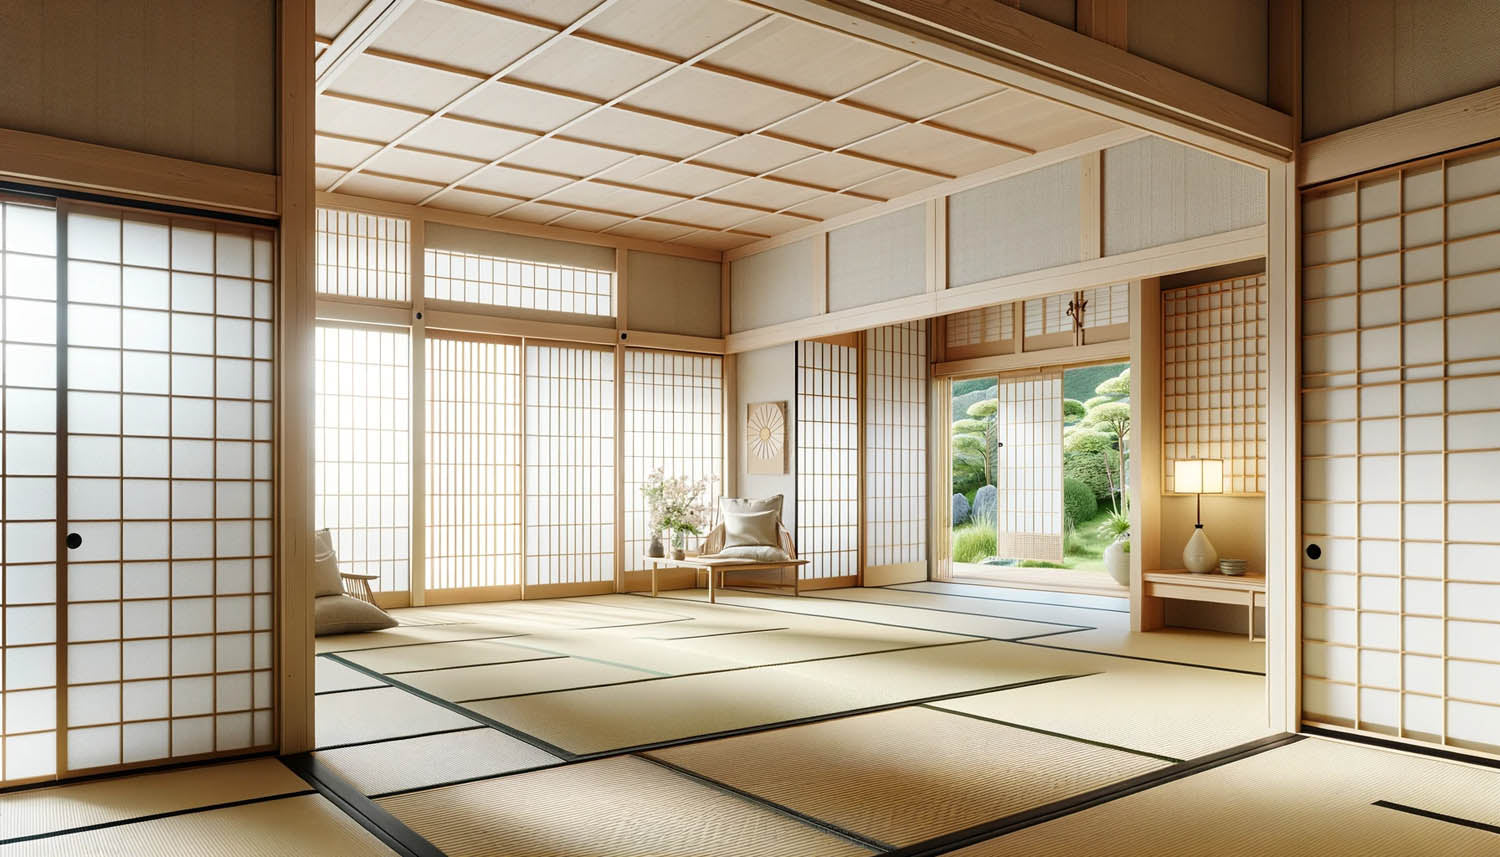 Standard Tatami Floor Mat – Haiku Designs